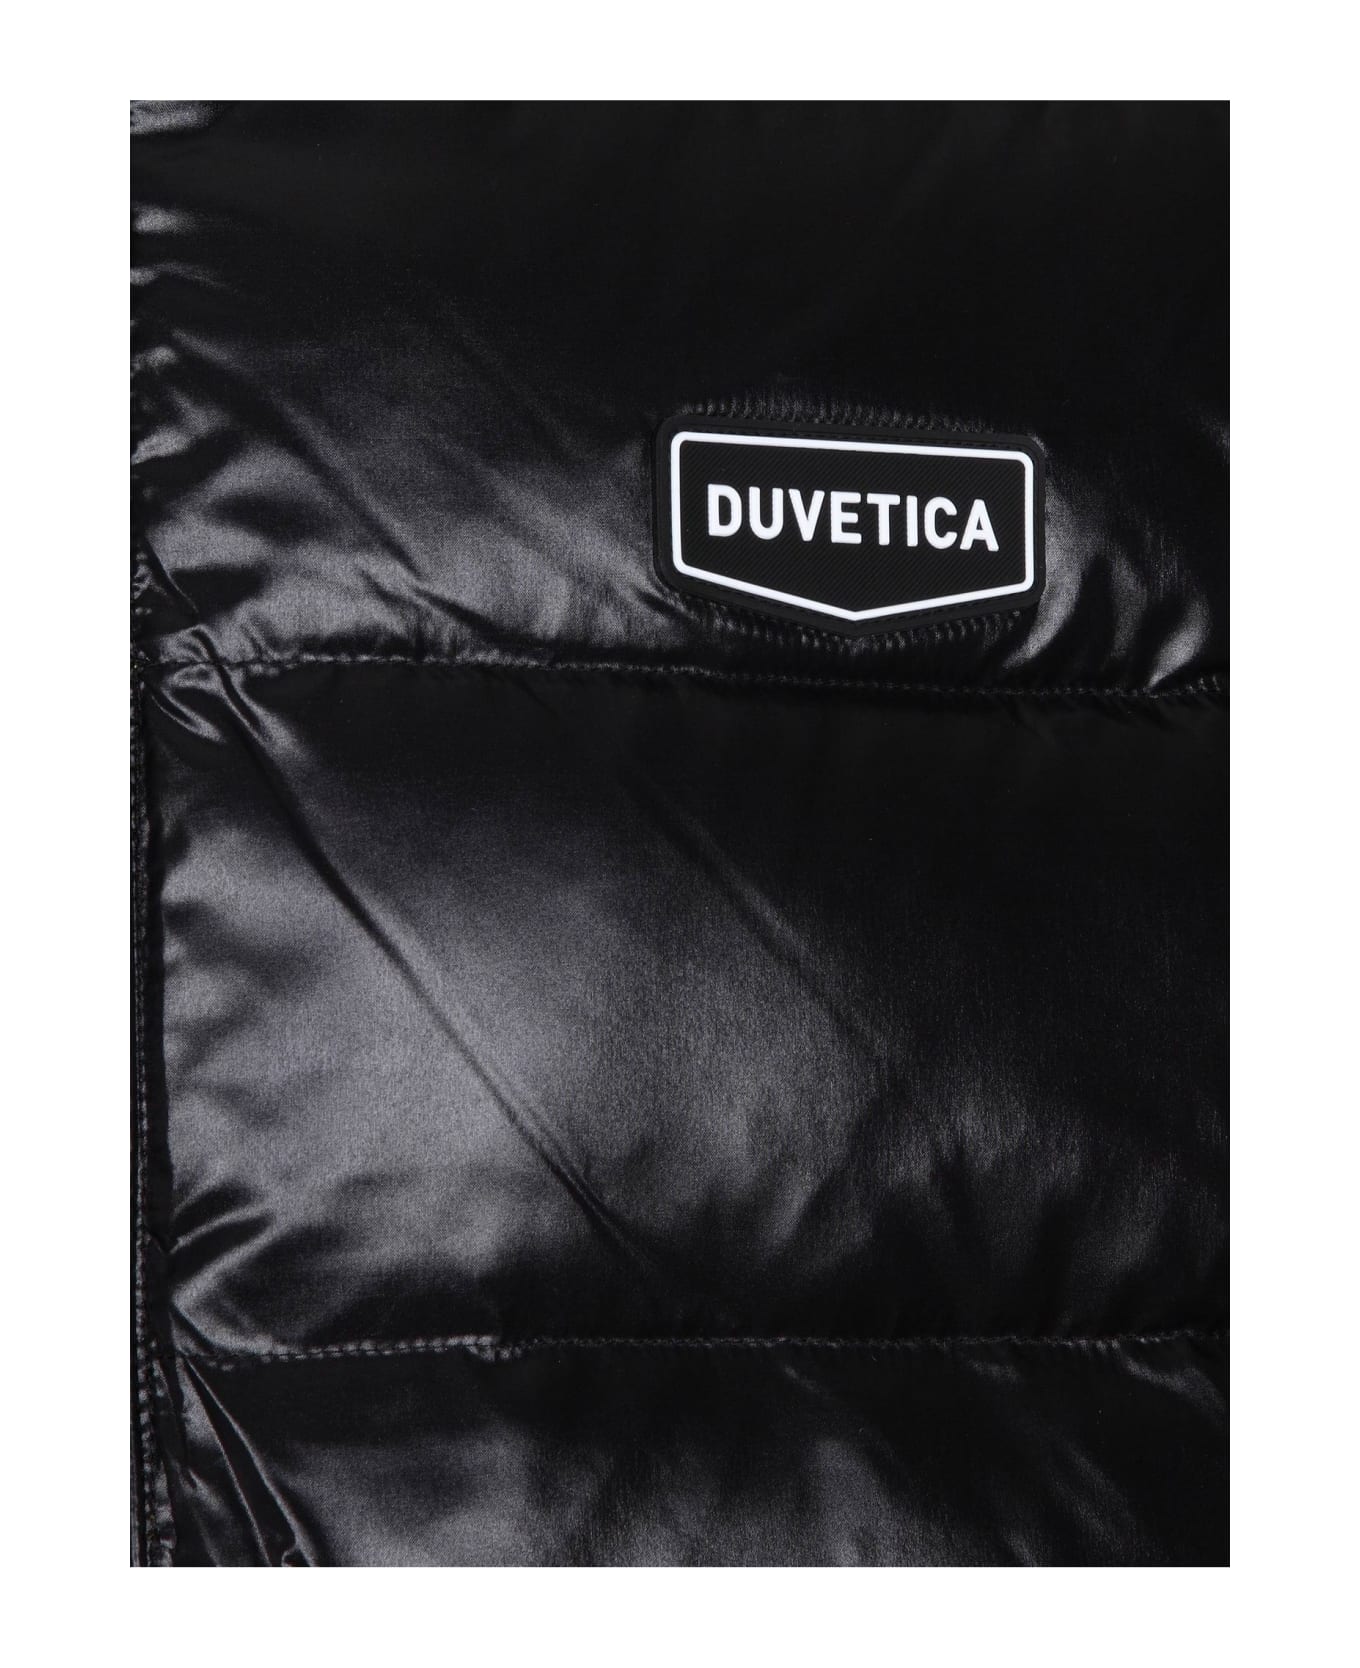 Duvetica Duvetiva Pherkad Sleeveless Down Jacket Color Black - Black